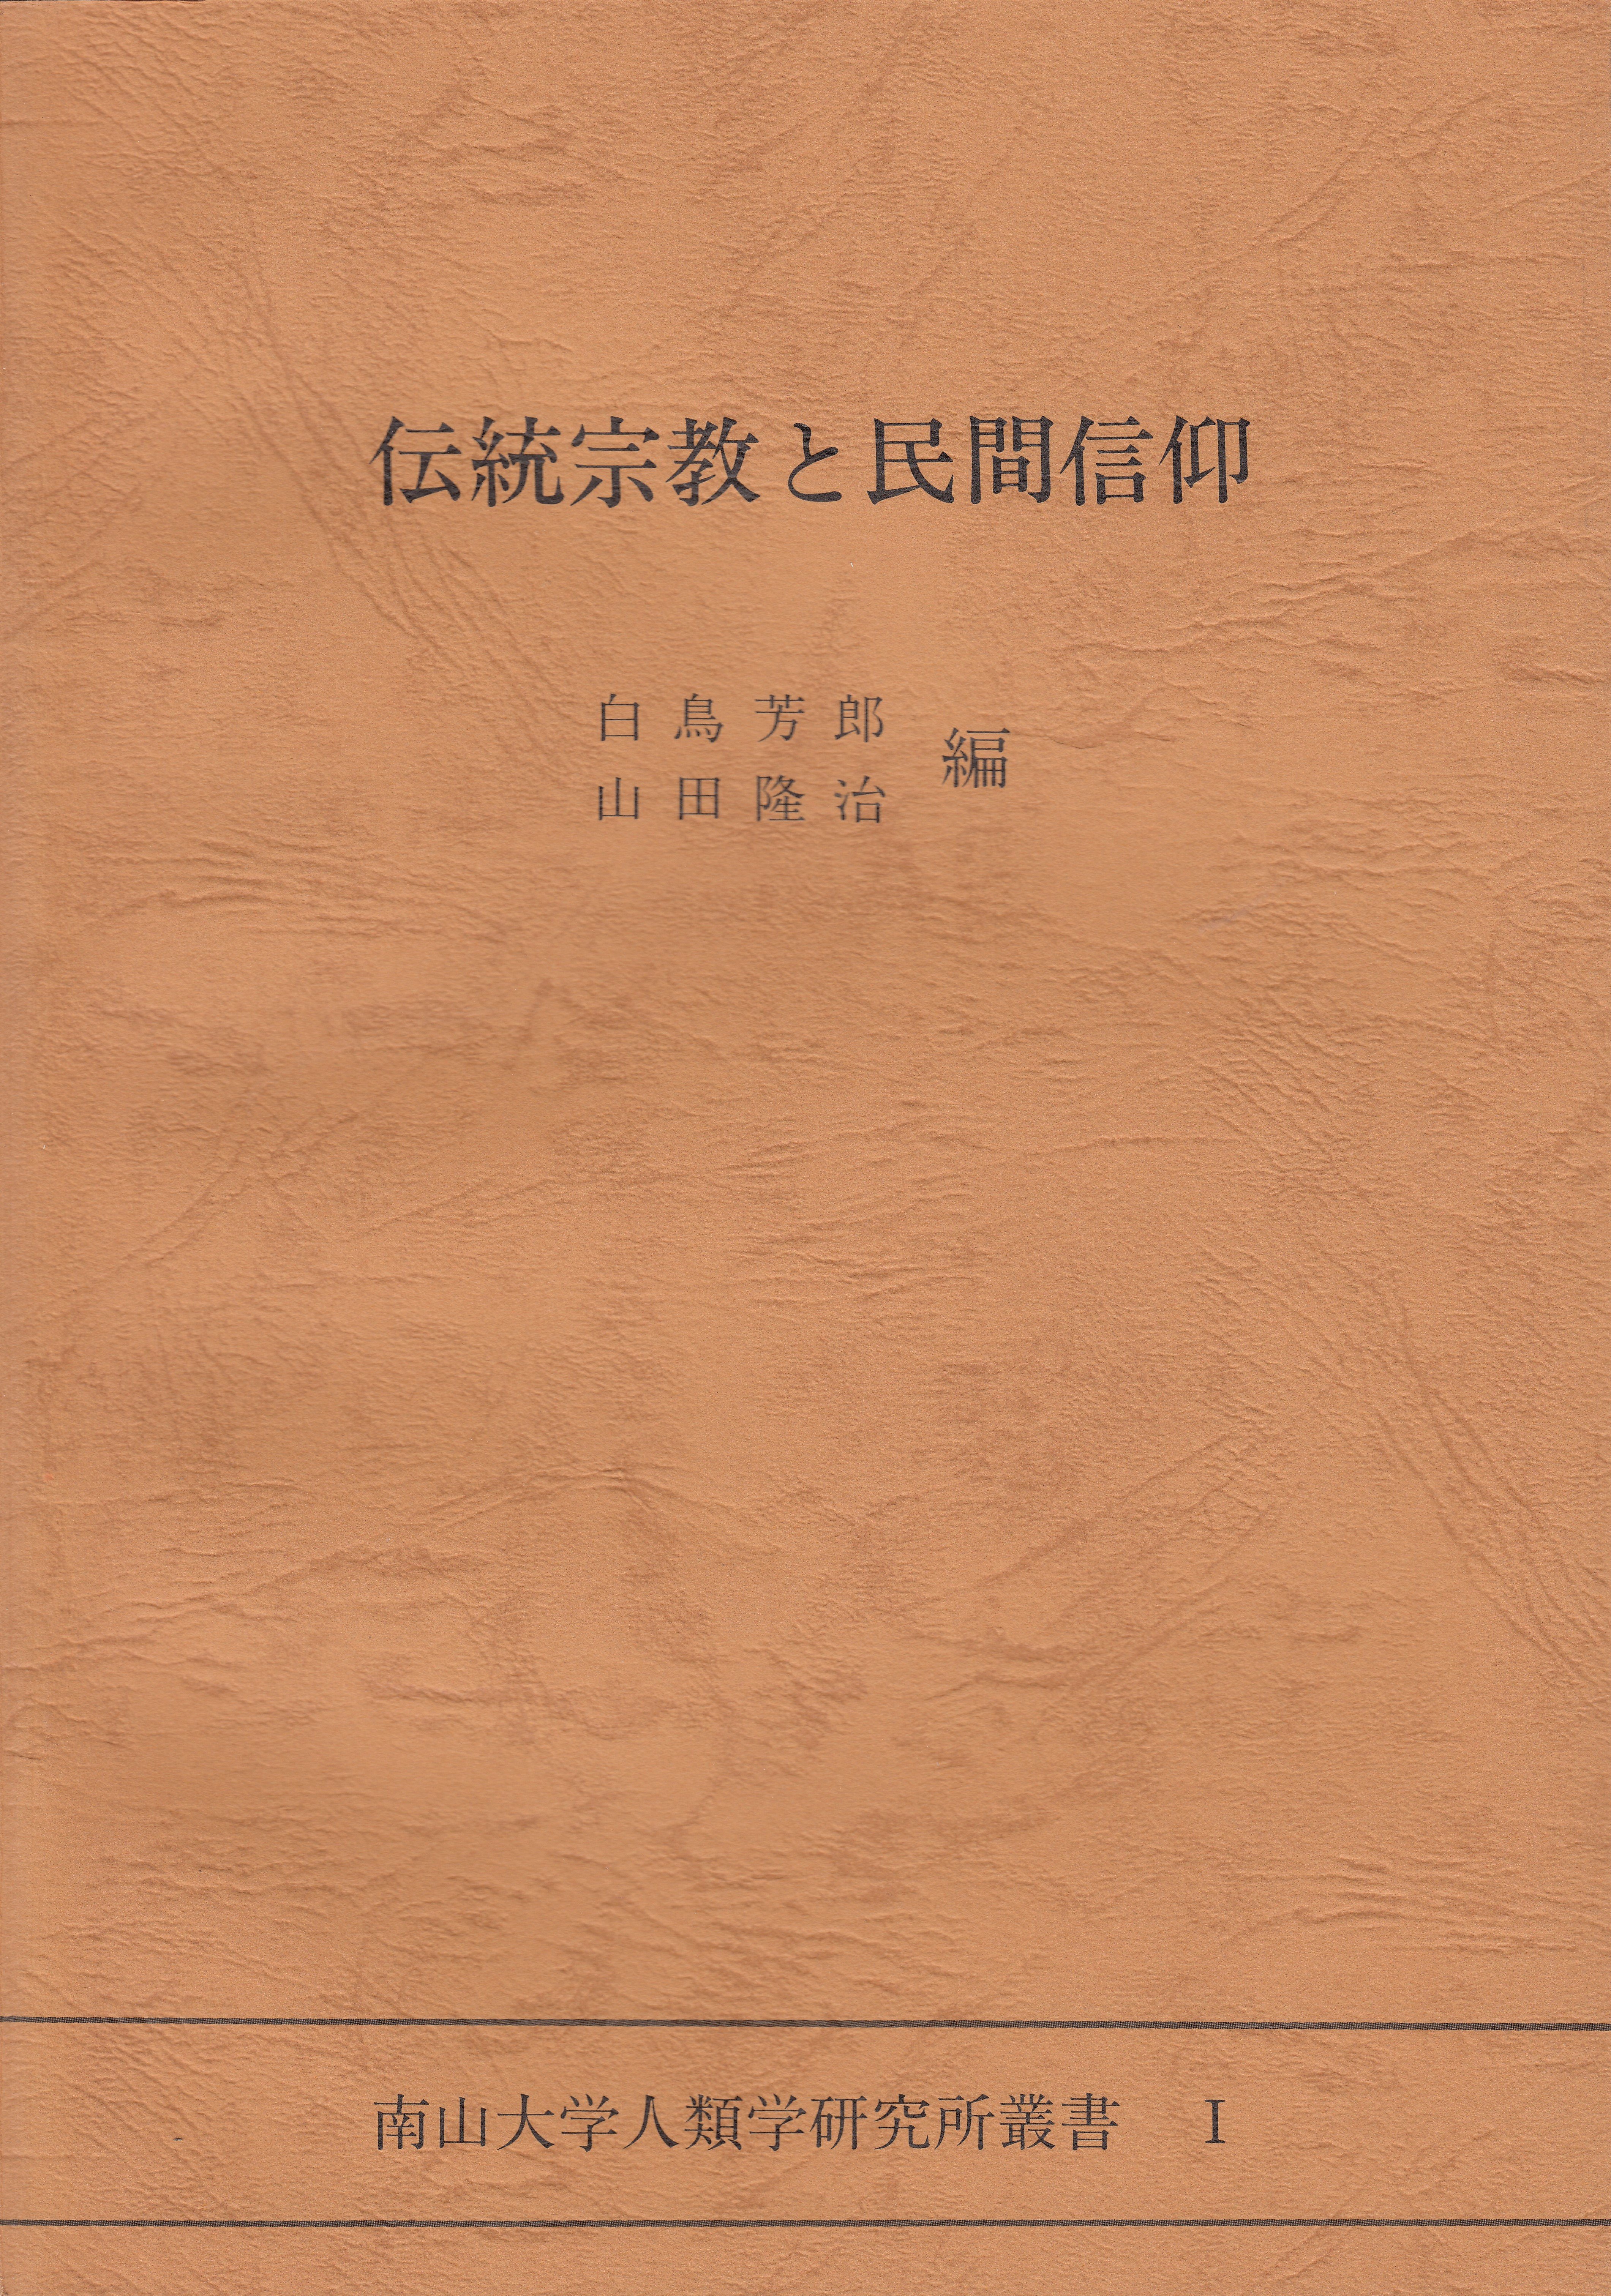 1.『伝統宗教と民間信仰』白鳥 芳郎・山田 隆治編（1982）￥2,500